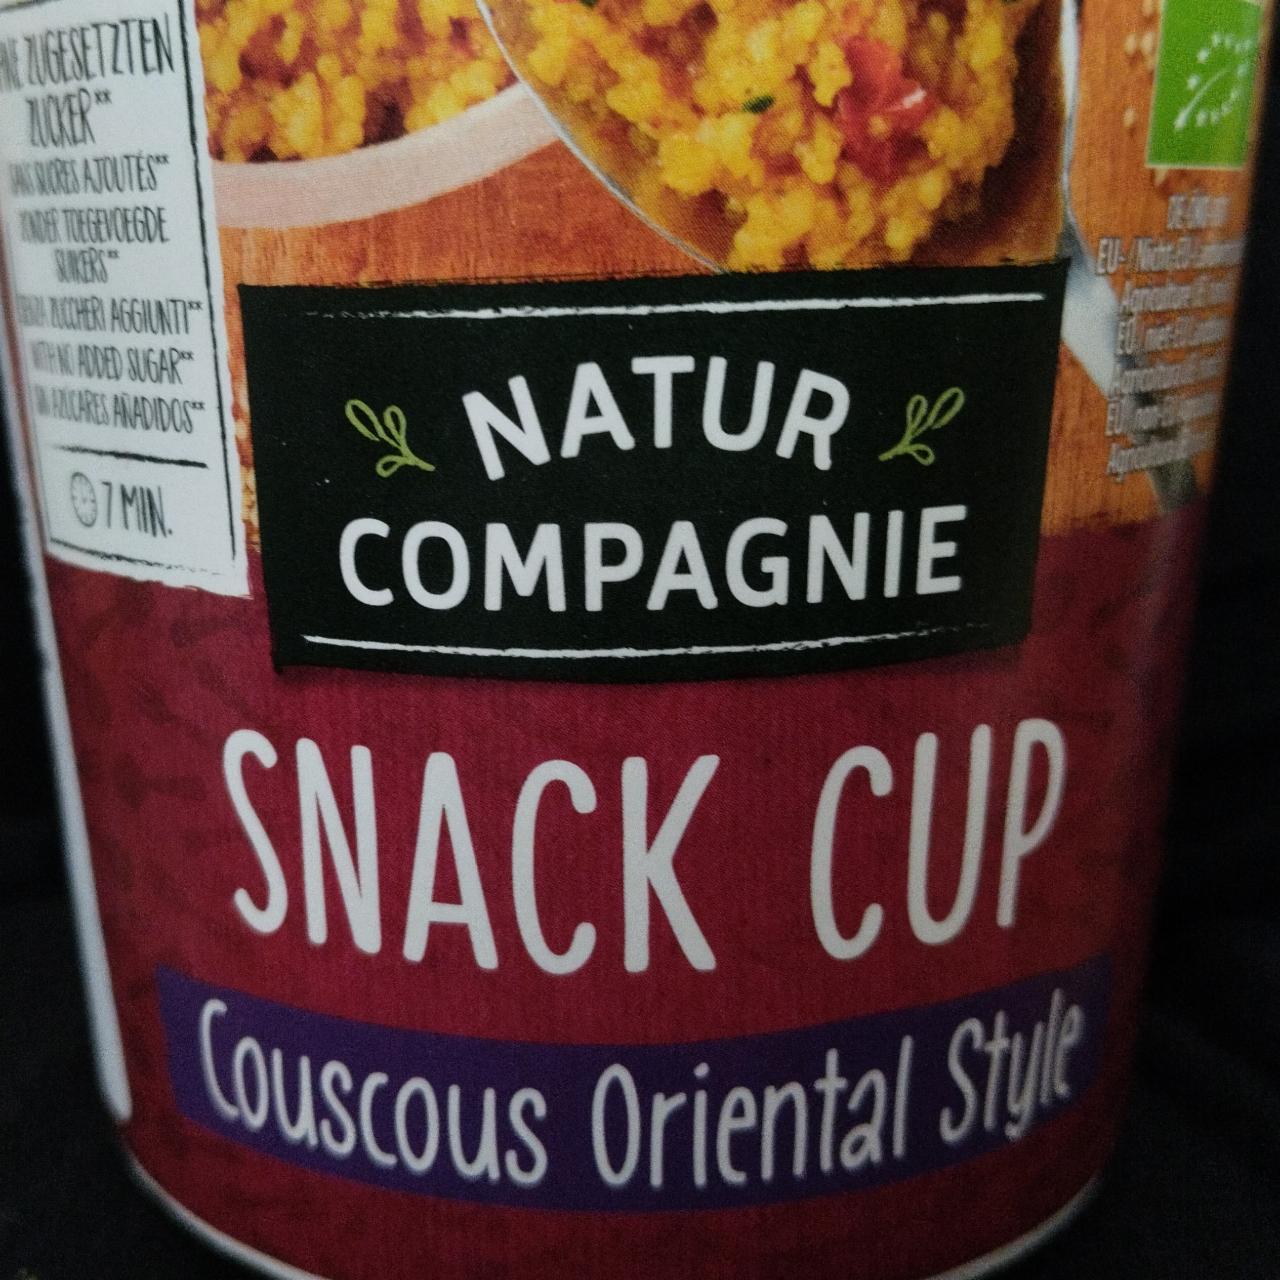 Fotografie - Snack cup Couscous Oriental Style Natur Compagnie